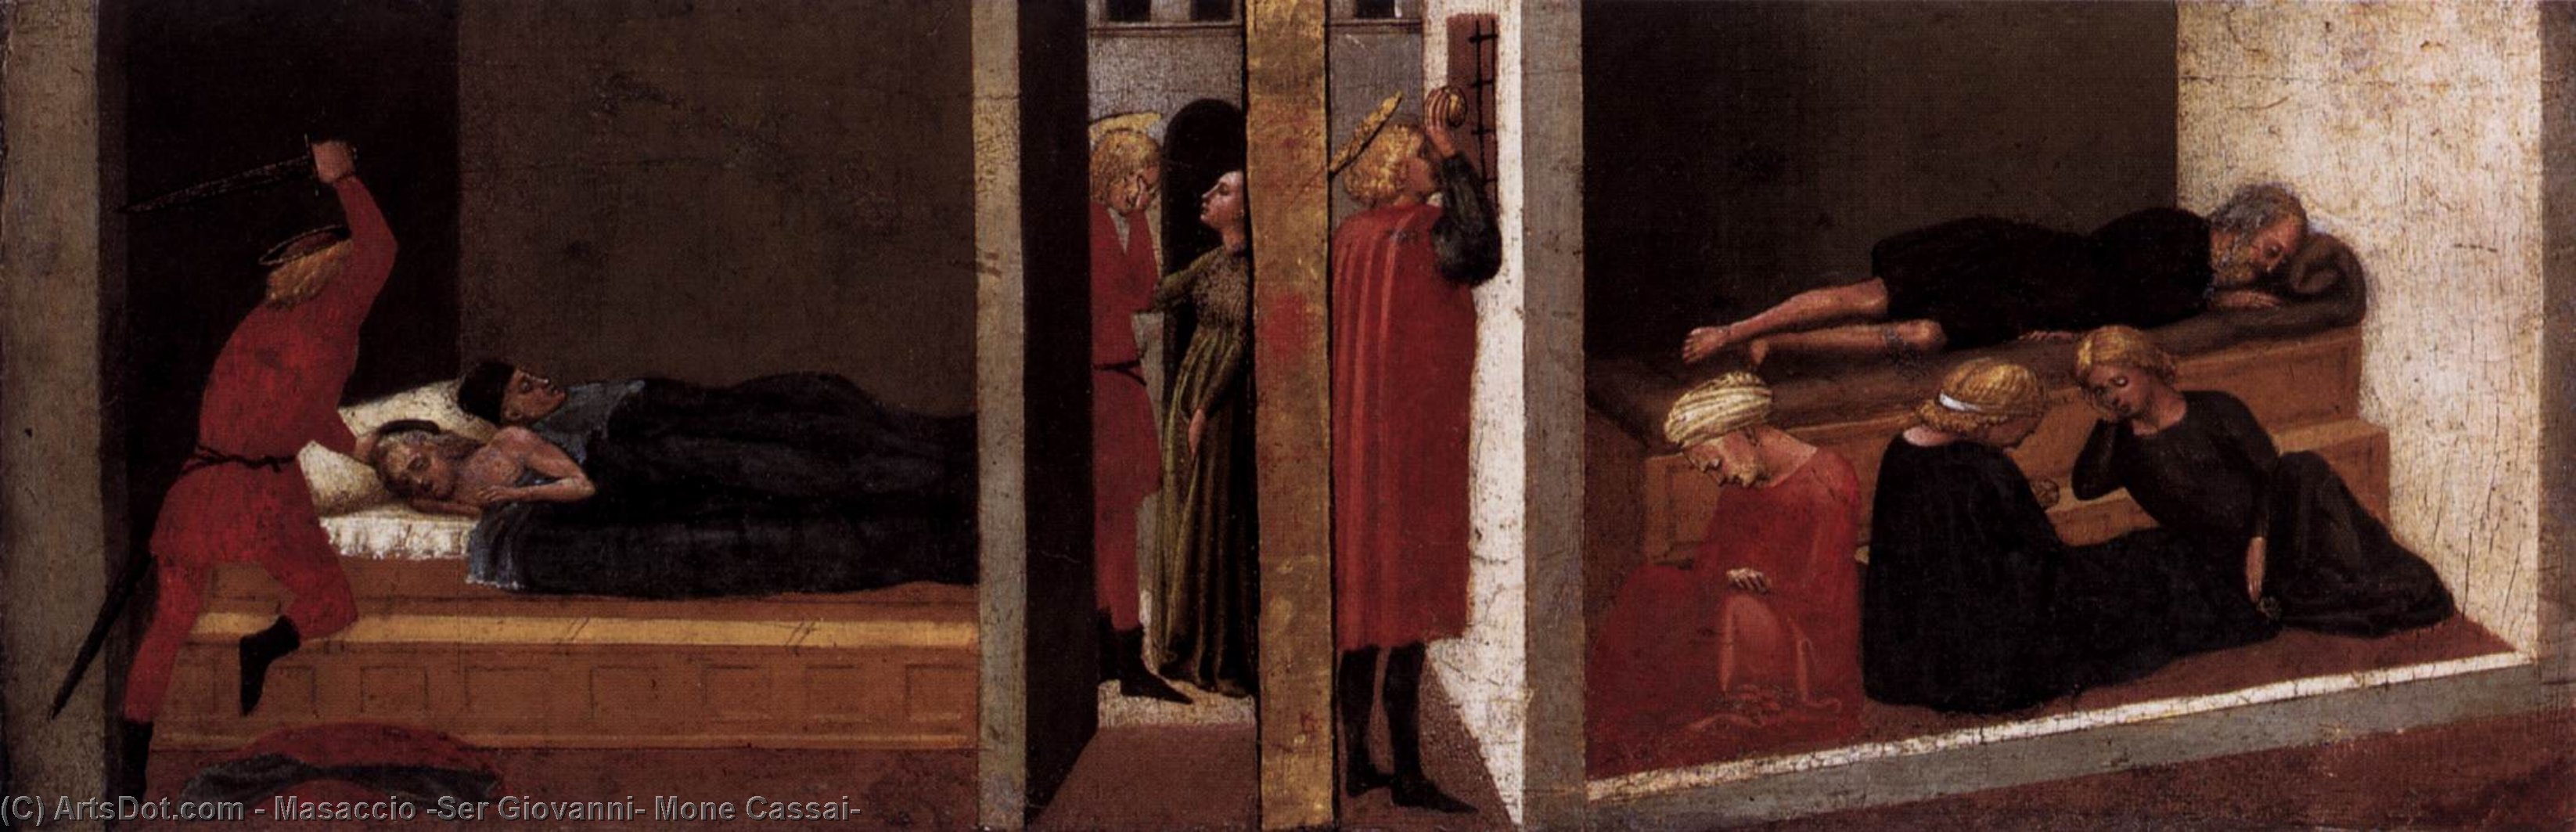 WikiOO.org - Encyclopedia of Fine Arts - Maalaus, taideteos Masaccio (Ser Giovanni, Mone Cassai) - Predella panel from the Pisa Altar